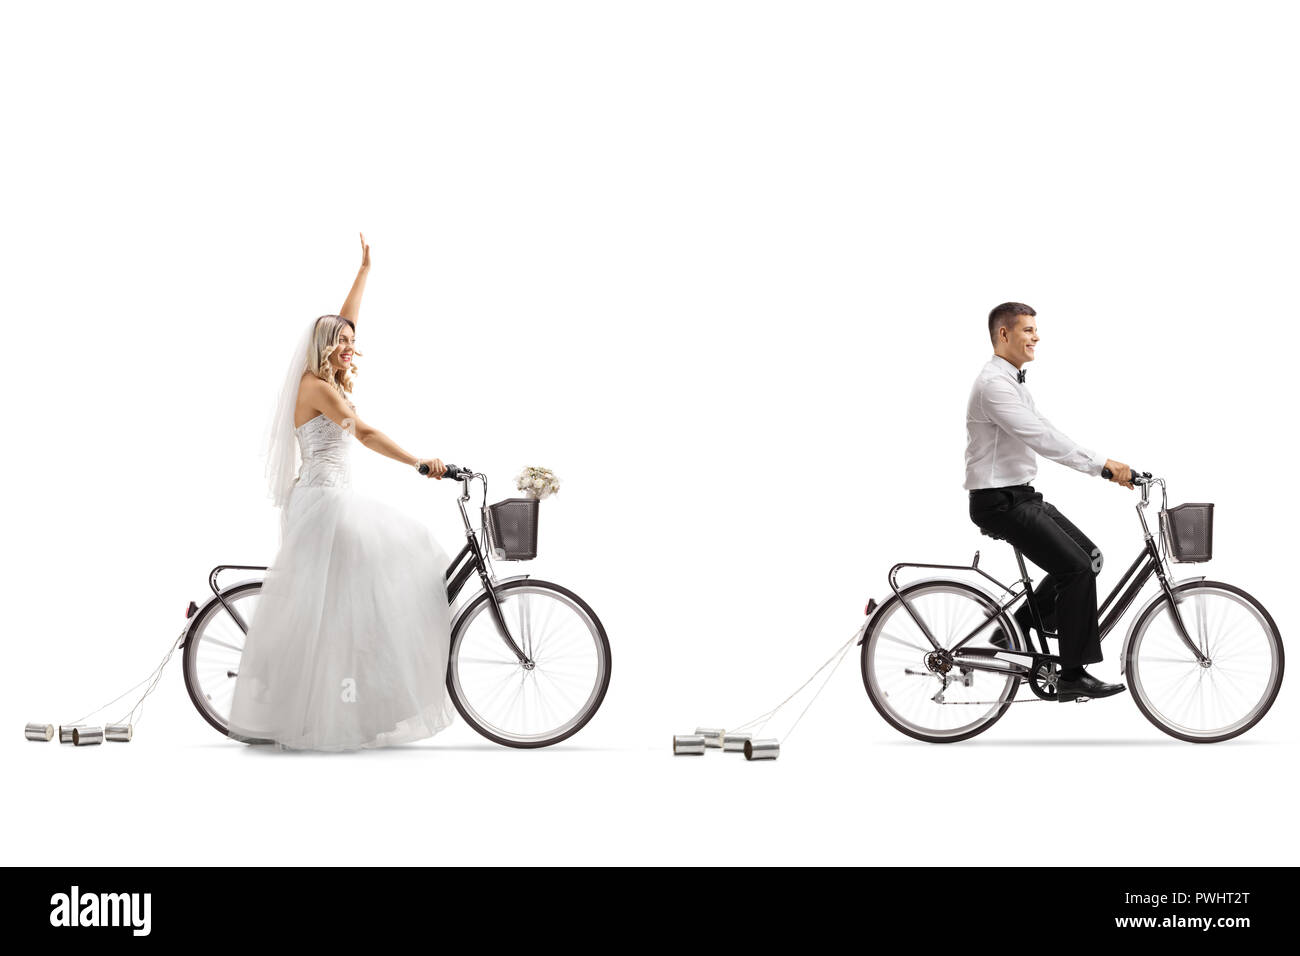 Mariée et un groom riding bicycles, la mariée forme isolé sur fond blanc Banque D'Images